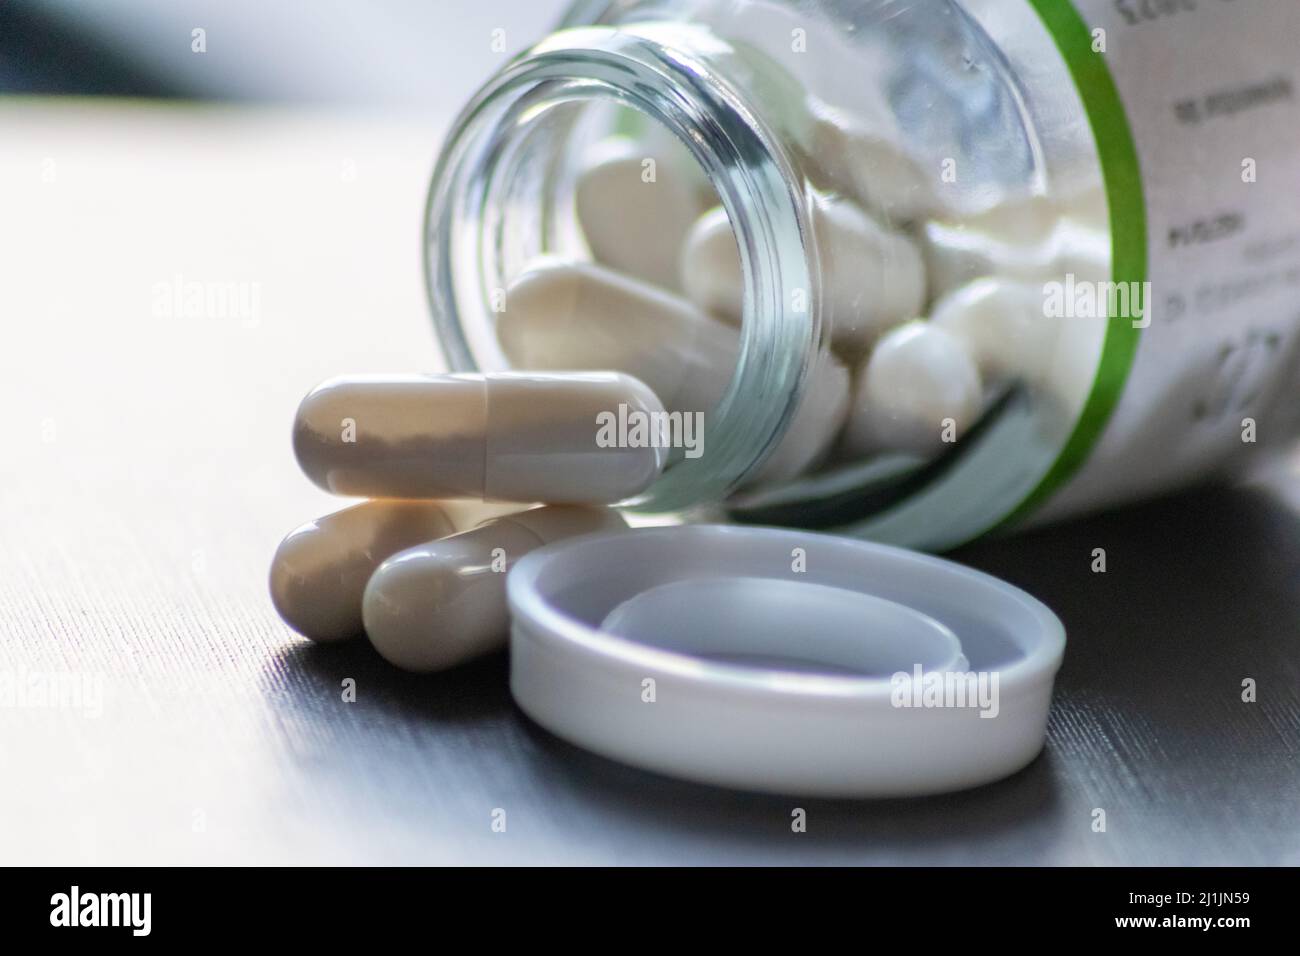 Beaucoup de pilules dans le pot médical pour le traitement de la dépression montrent la pandémie et la quarantaine de maladie et les soins médicaux de santé pour la toxicomanie comme paquet de médicaments Banque D'Images